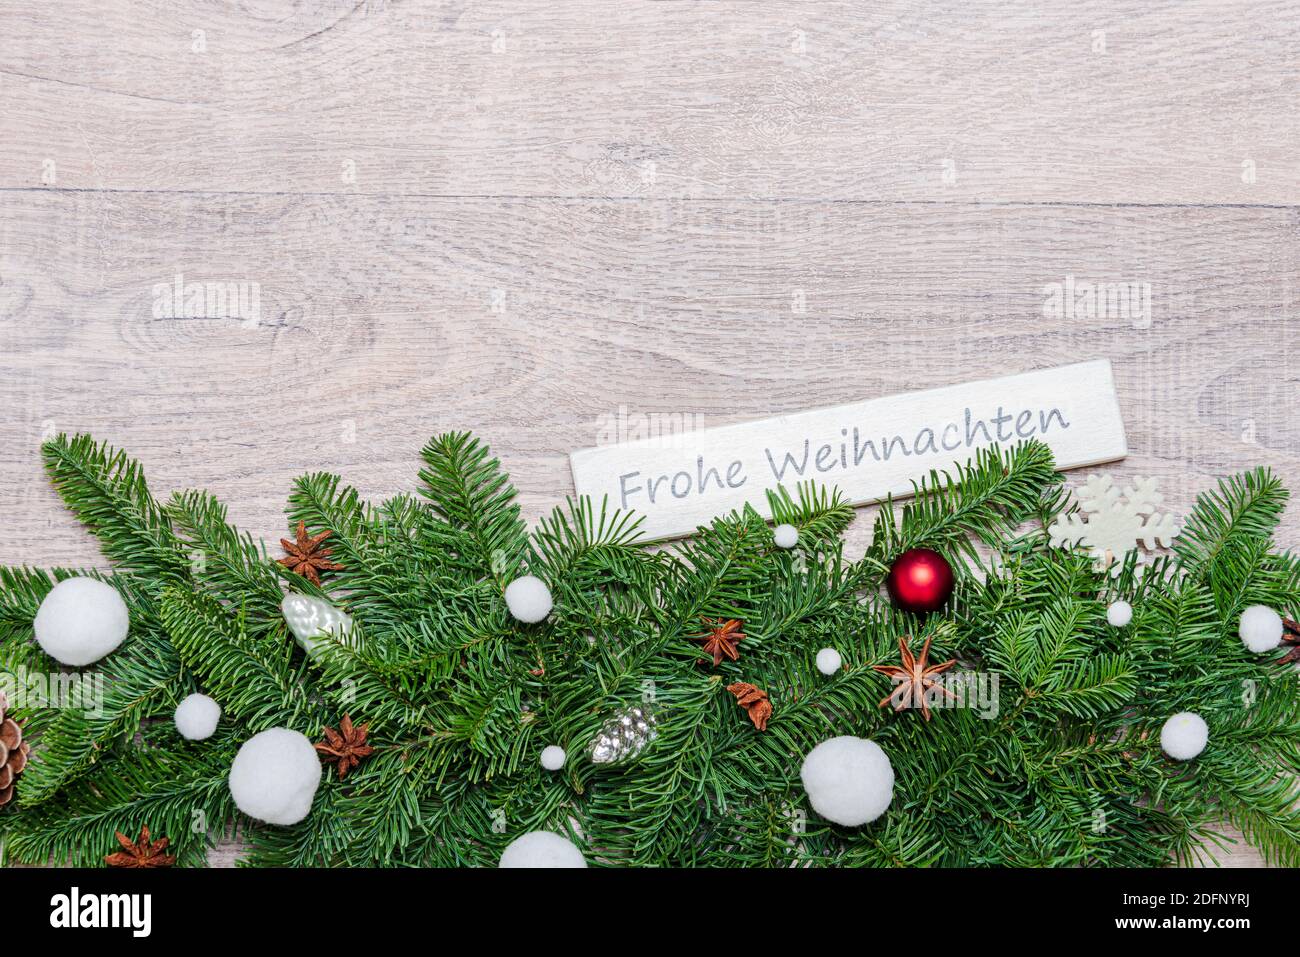 Weihnachtsdekoration mit grünen Tannenzweigen, Corona Alltagsmasken und einem Schild 'Frohe Weihnachten' Stock Photo